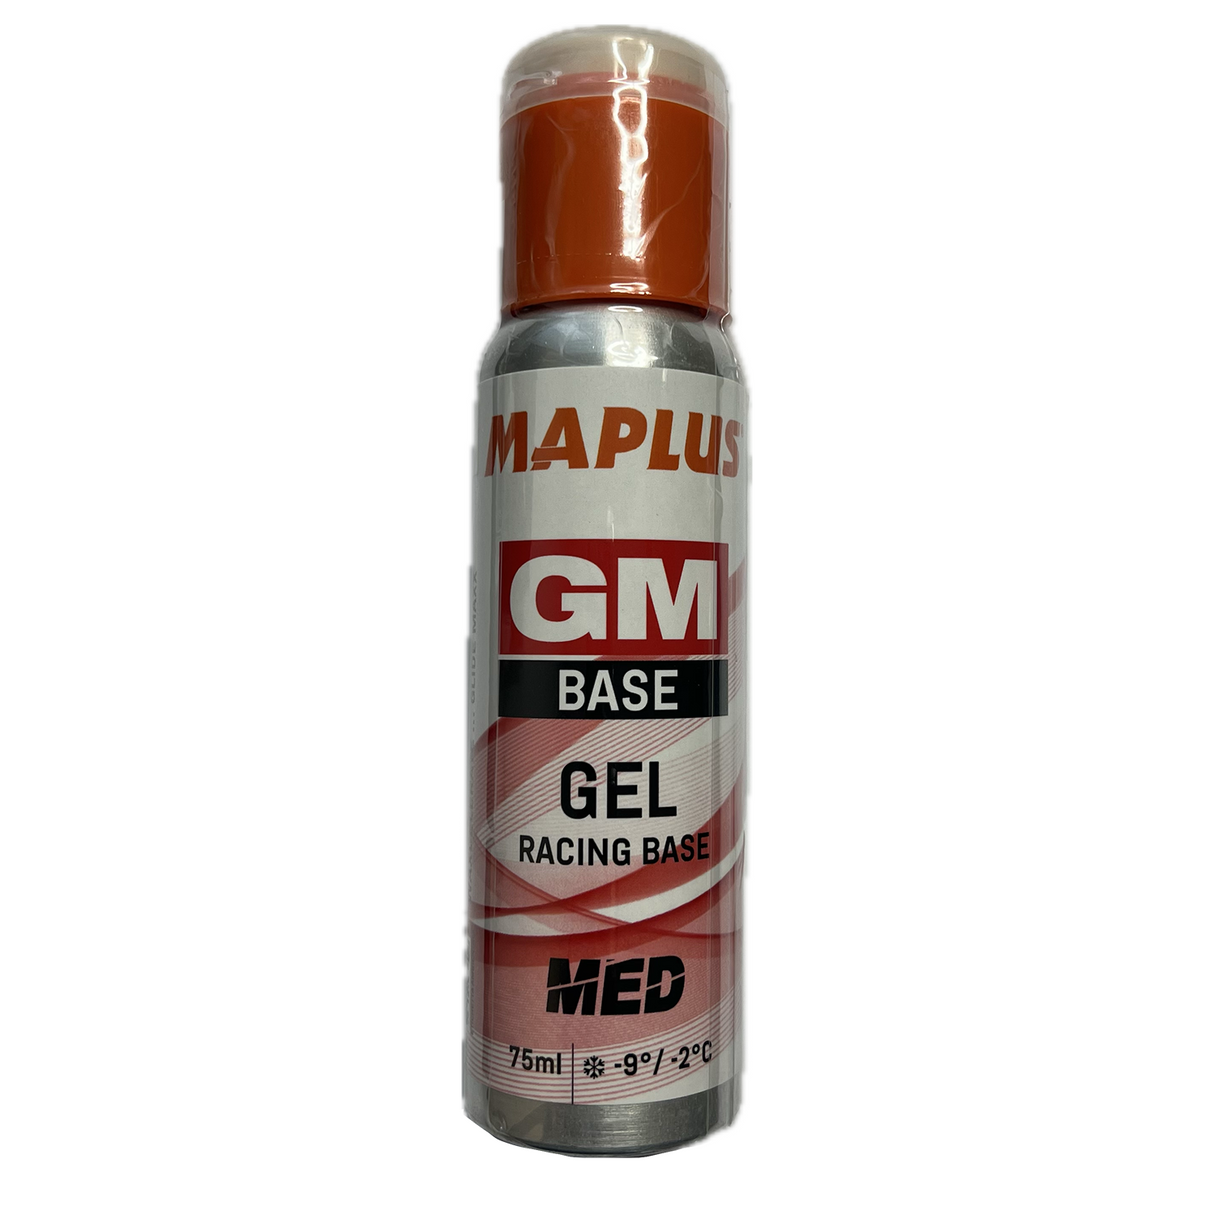 Maplus GM Base Gel Med 75ml